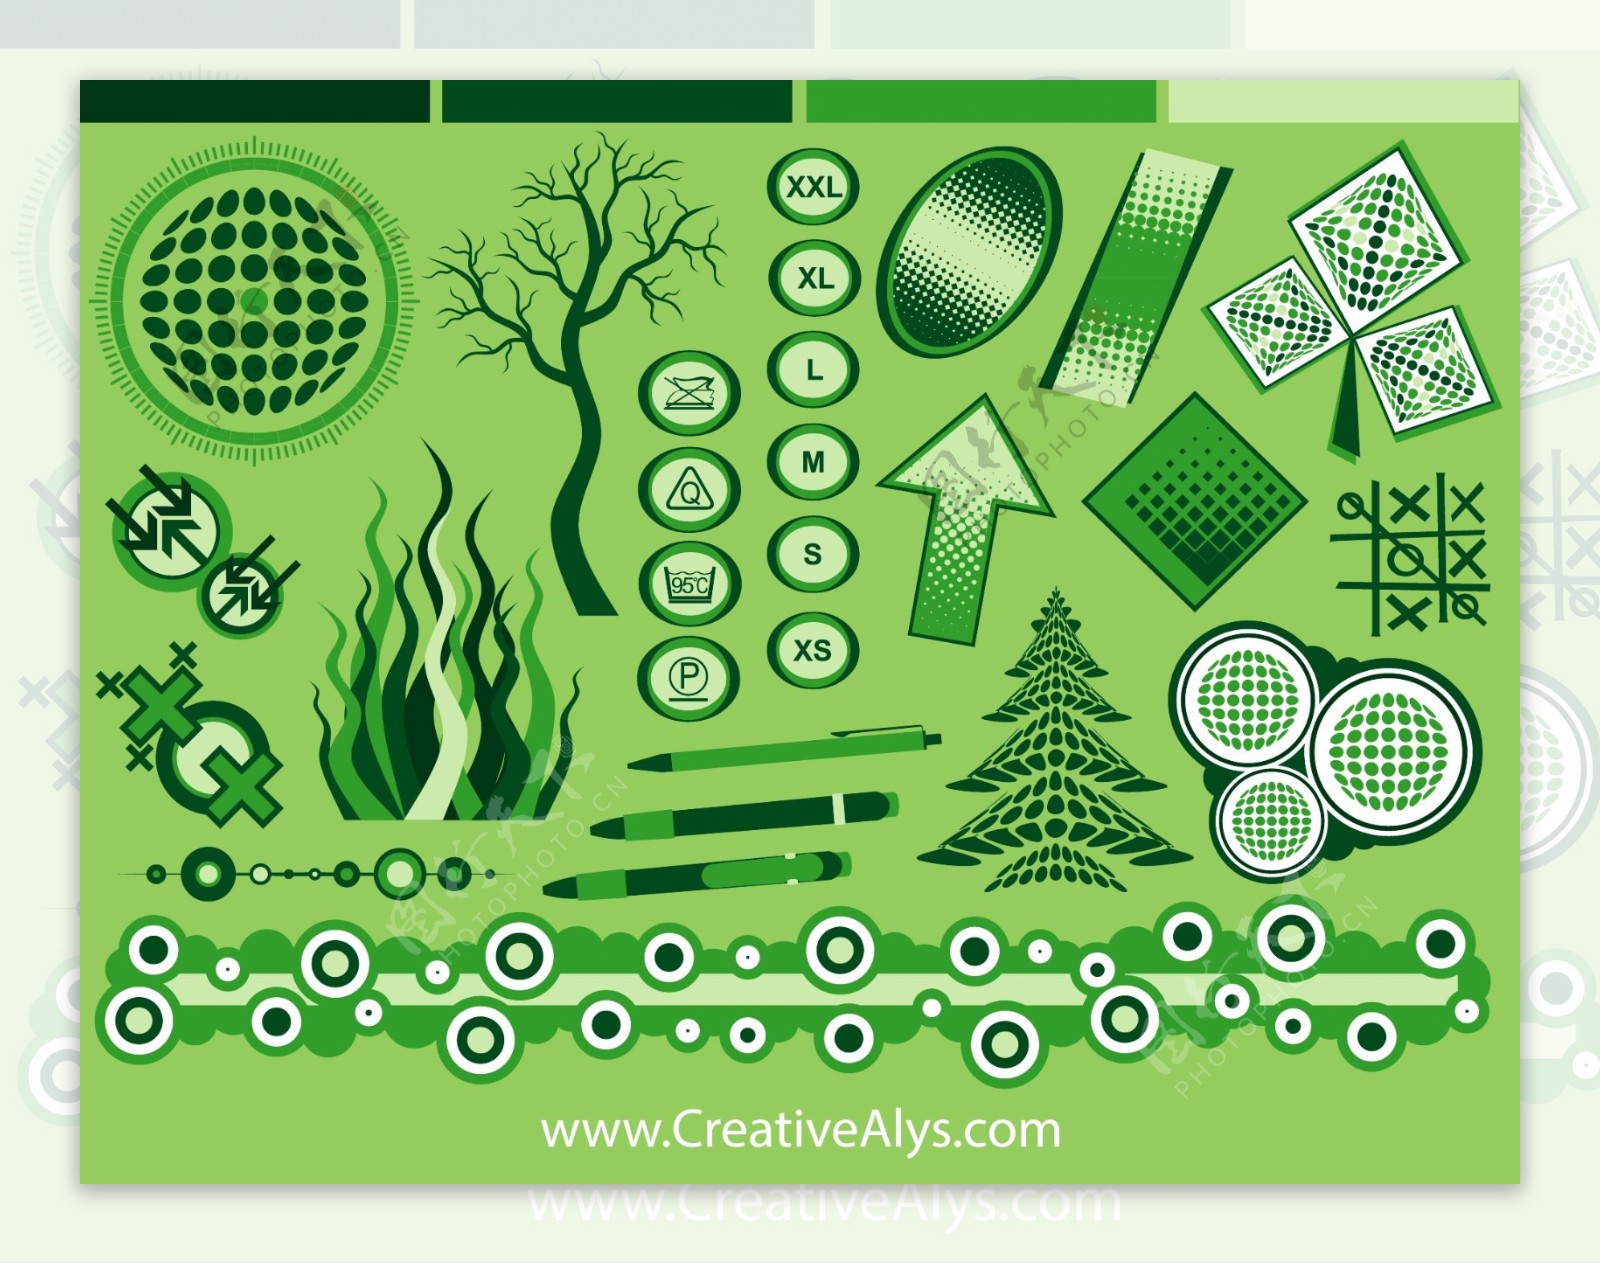 创意图形标志设计和网站设计元素图背景